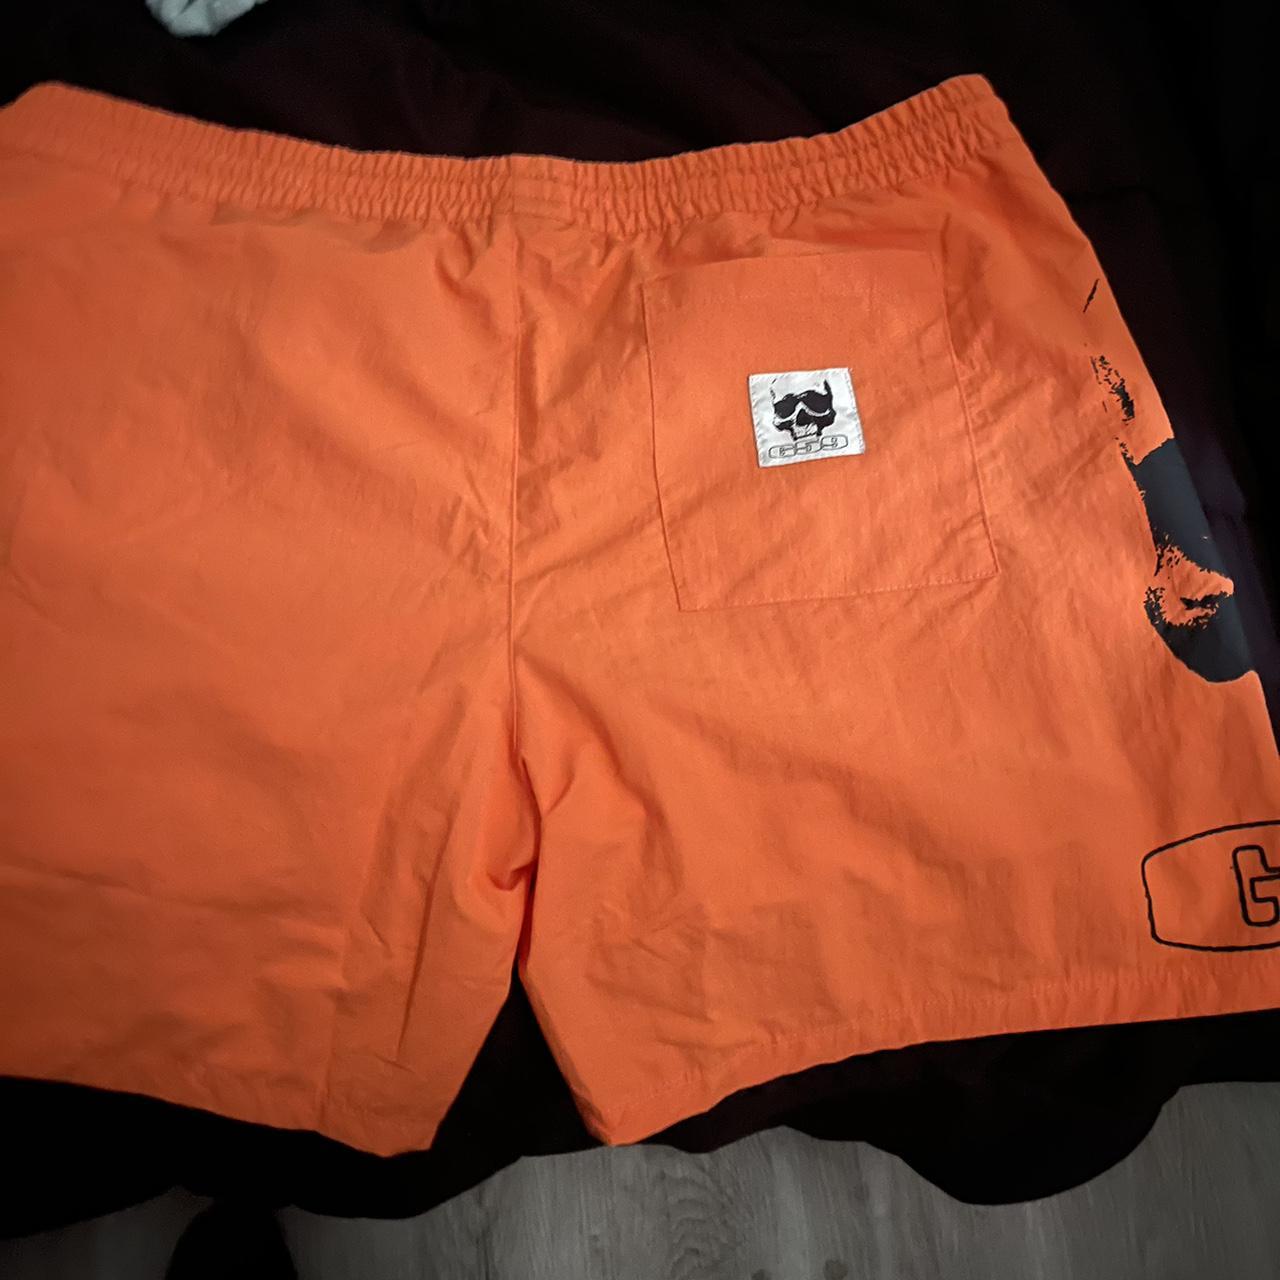 G59 logo Nylon shorts (Orange/Black) 10/10... - Depop